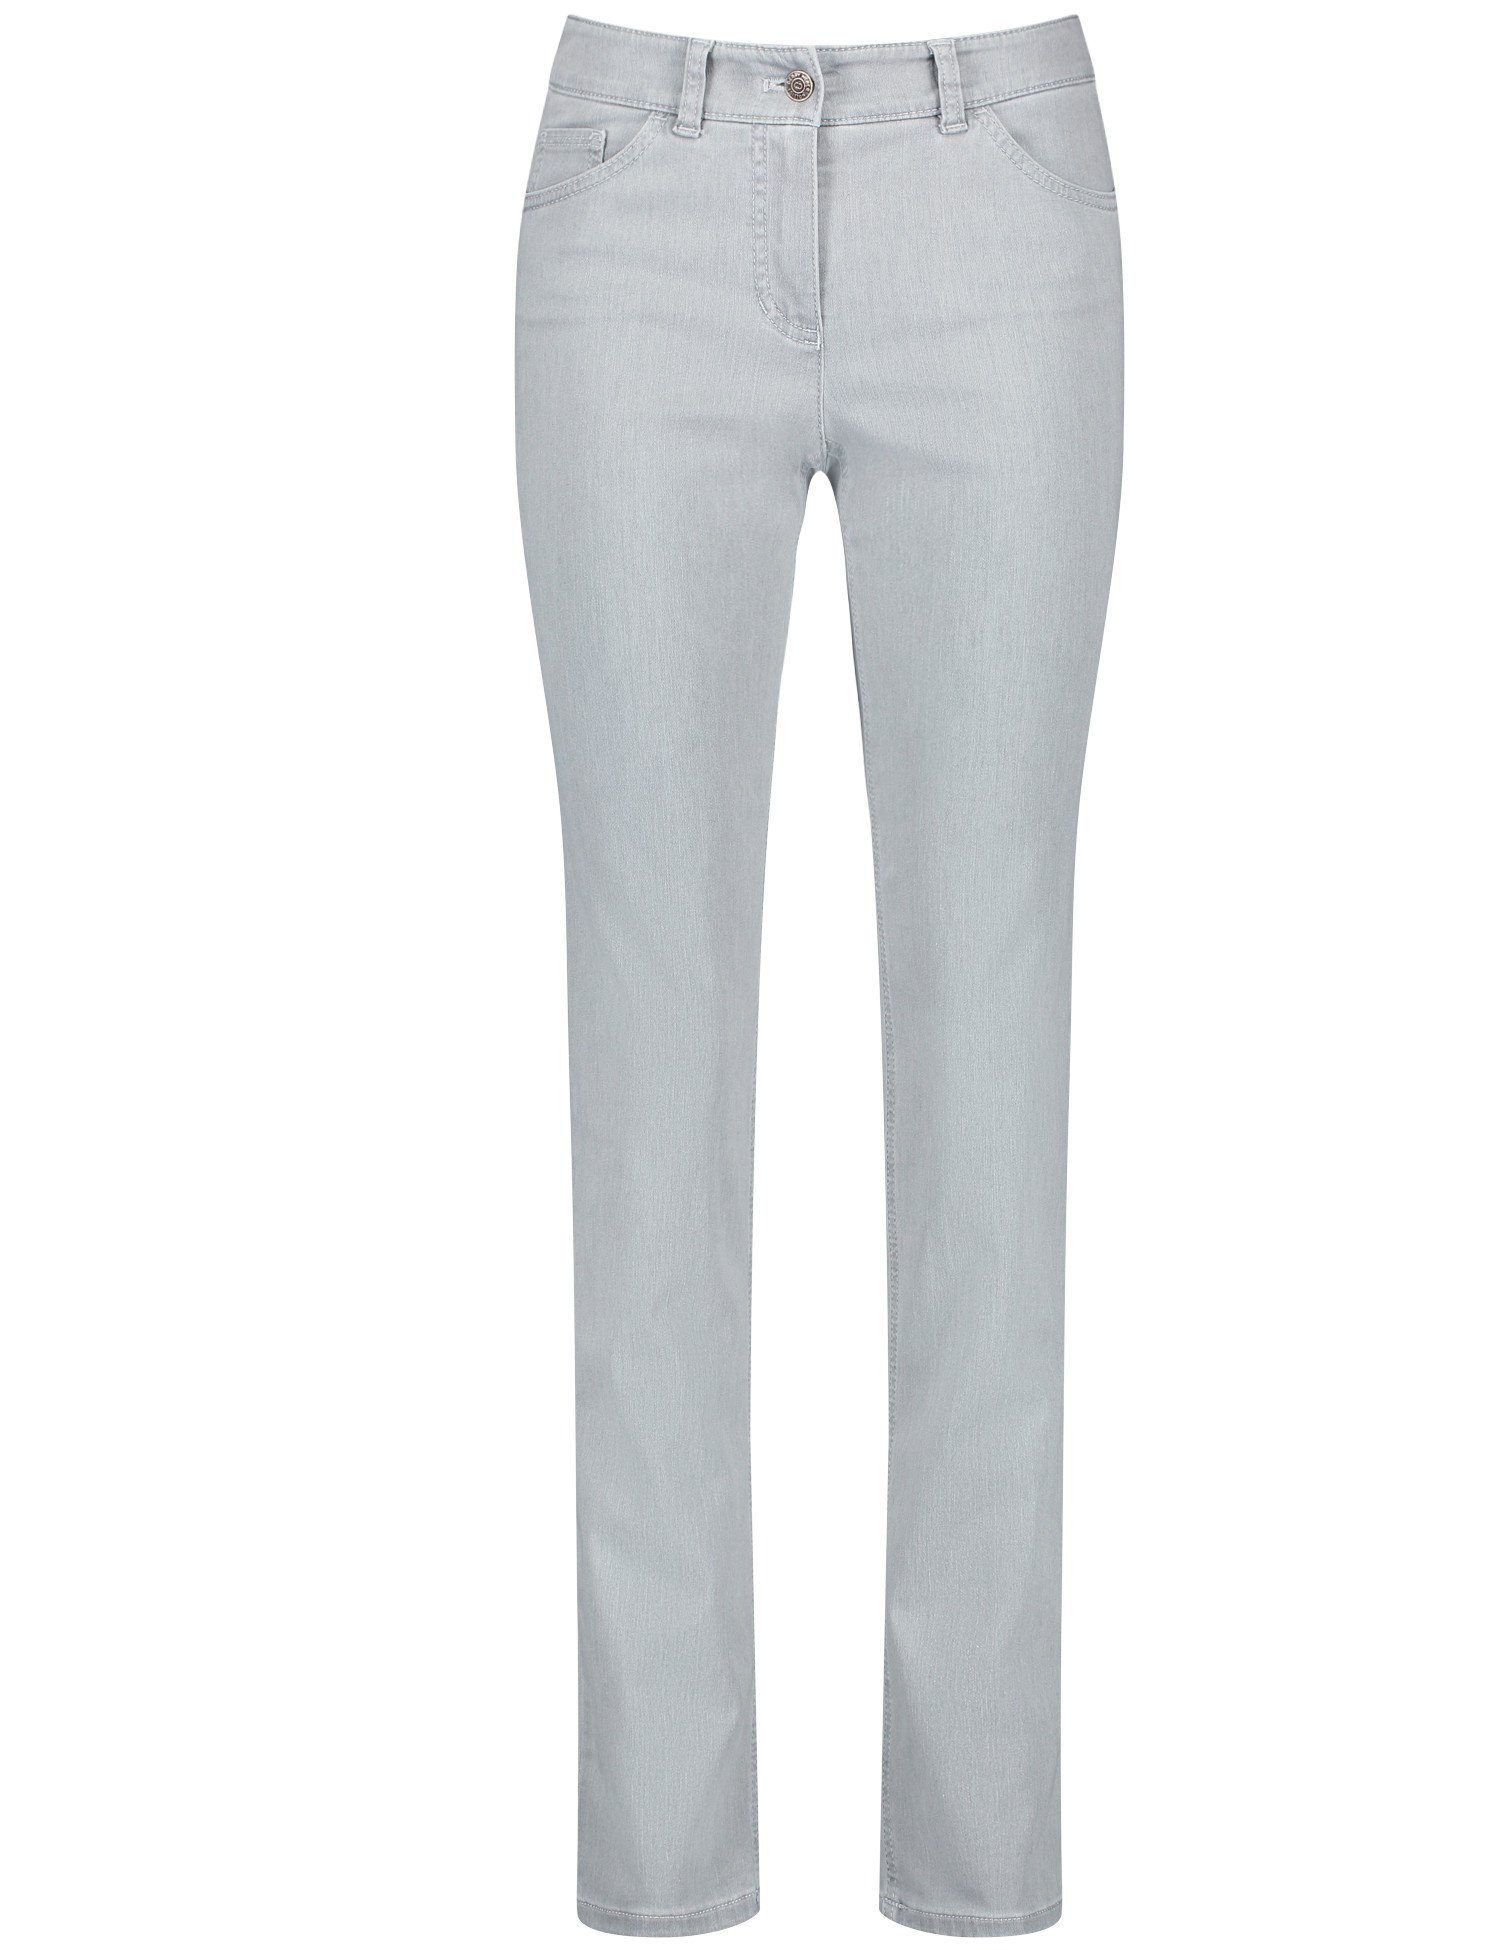 Slim-fit-Jeans grey WEBER denim Fit Slim GERRY light 5-pocket Hose